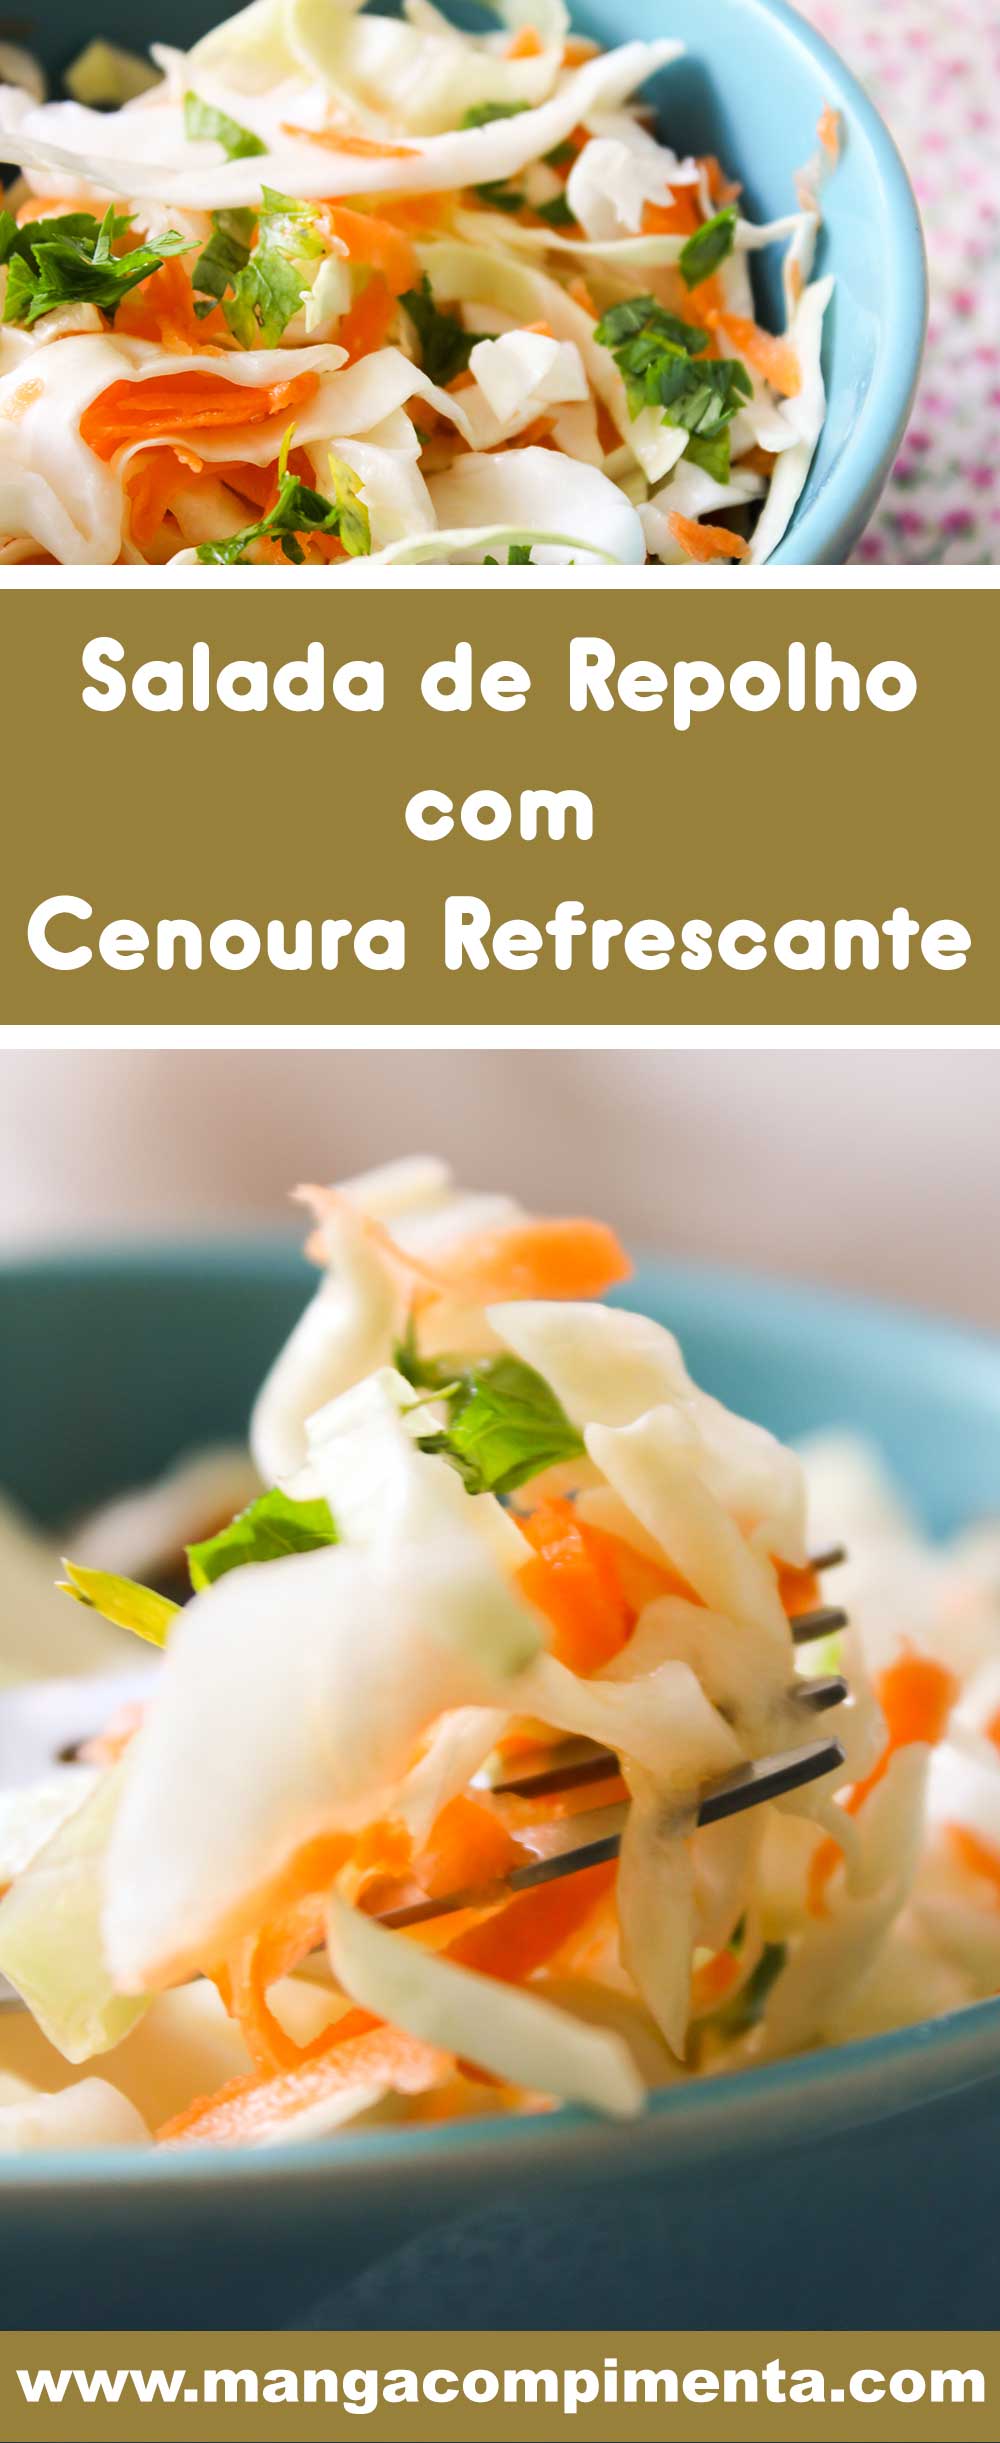 Receita de Salada de Repolho com Cenoura Refrescante - uma entrada deliciosa antes do prato principal.